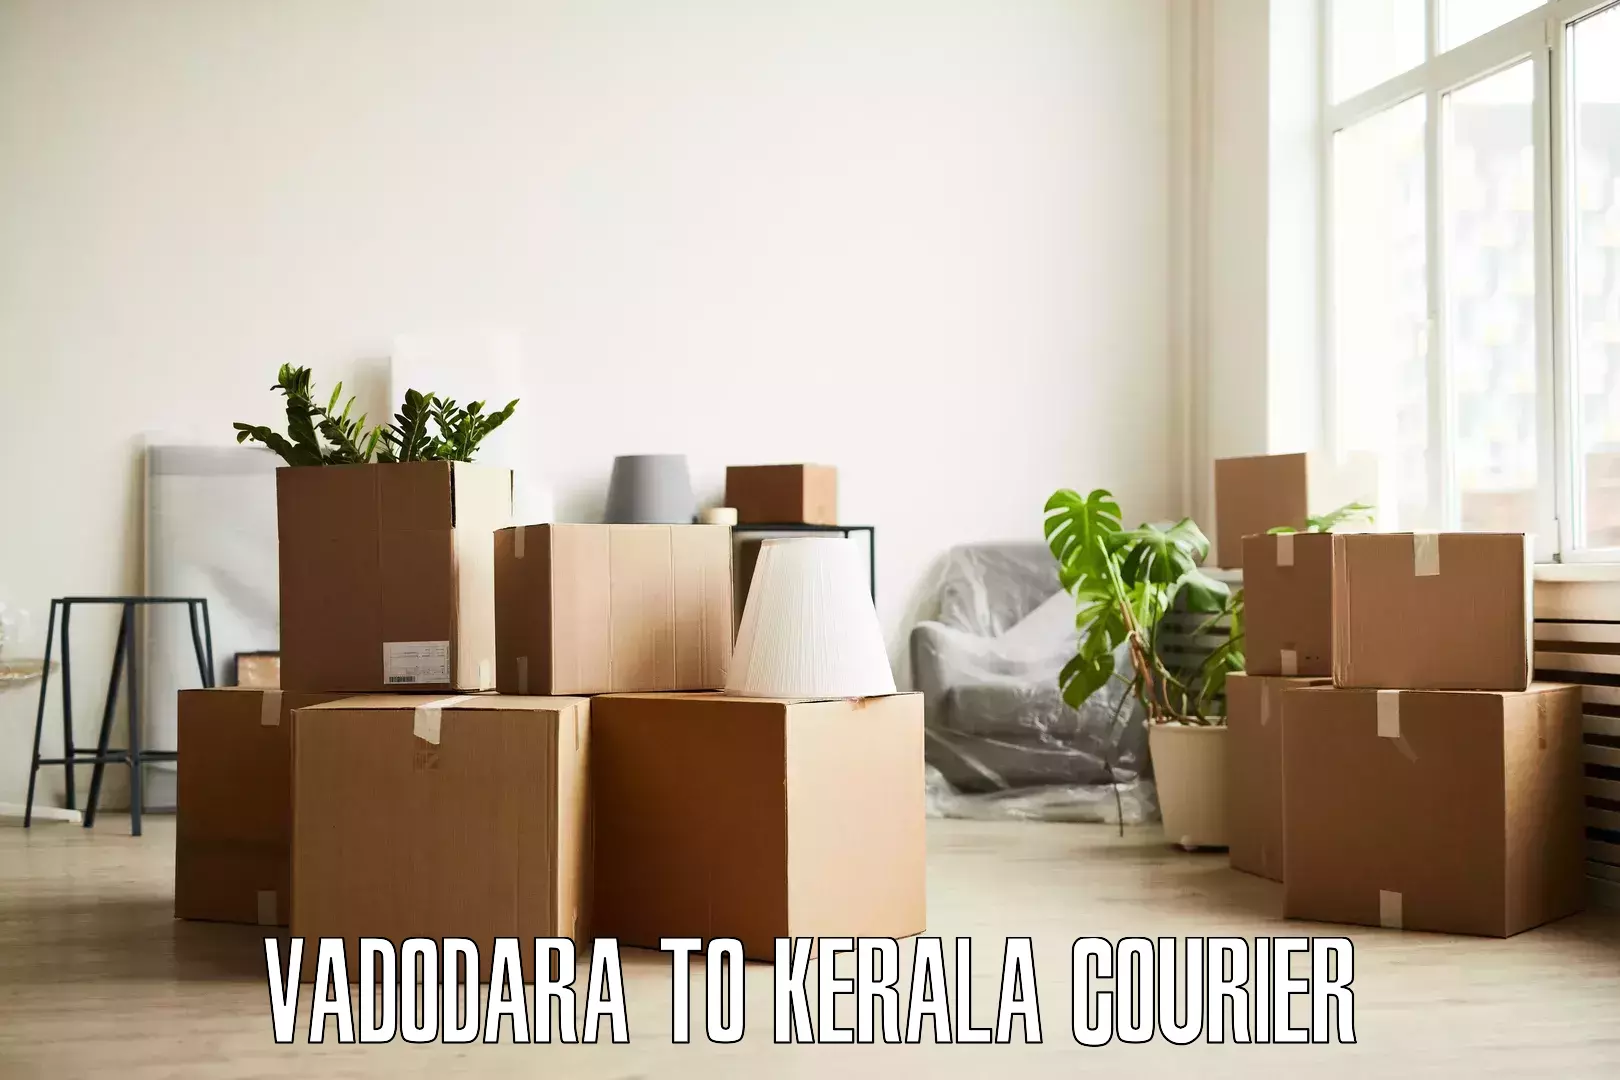 Nationwide furniture transport Vadodara to Irinjalakuda